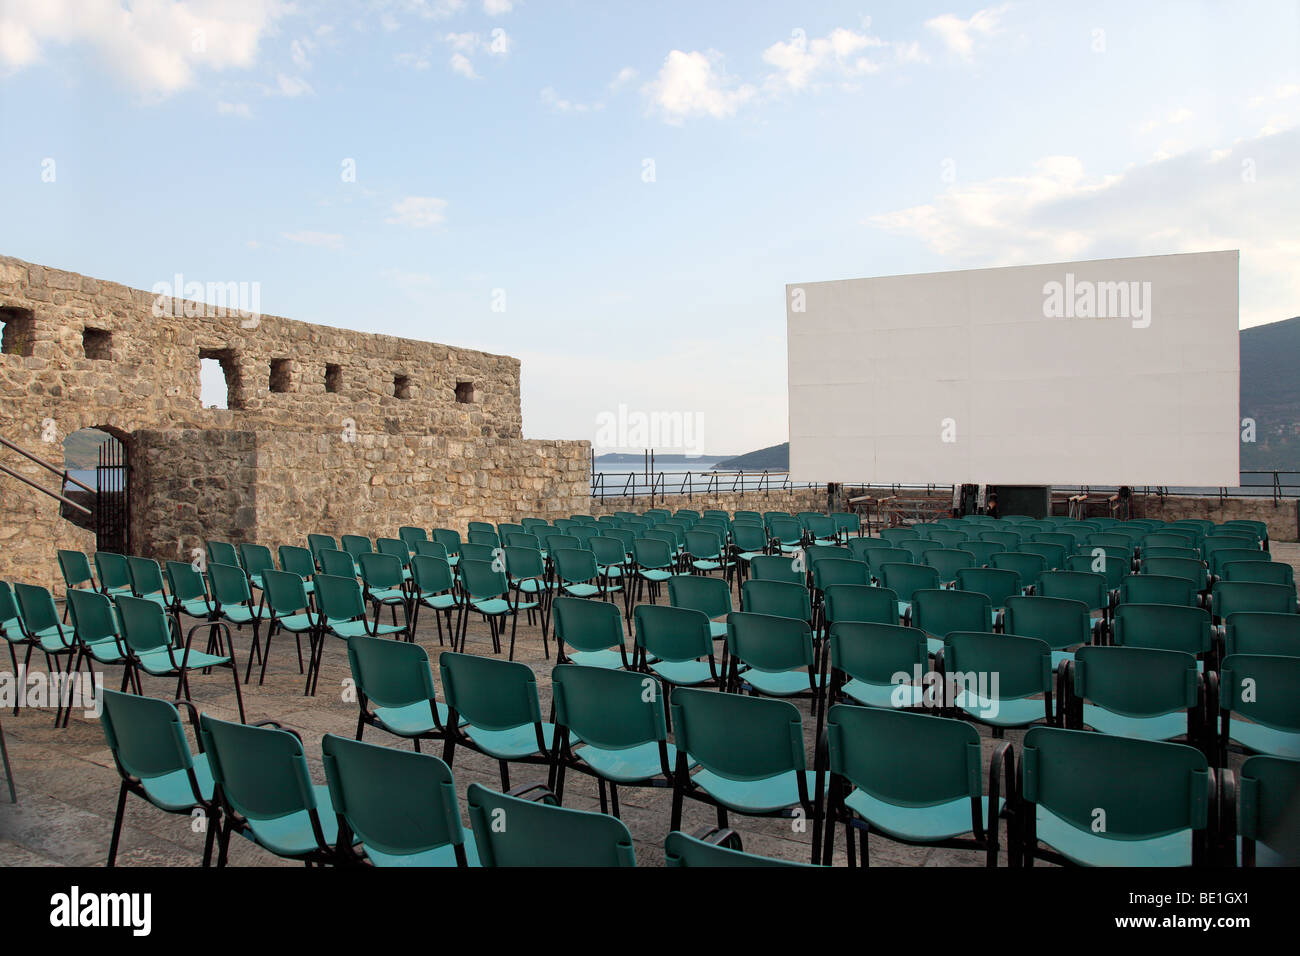 Cinéma en plein air, Fort Mare, Herceg Novi, Monténégro. Banque D'Images